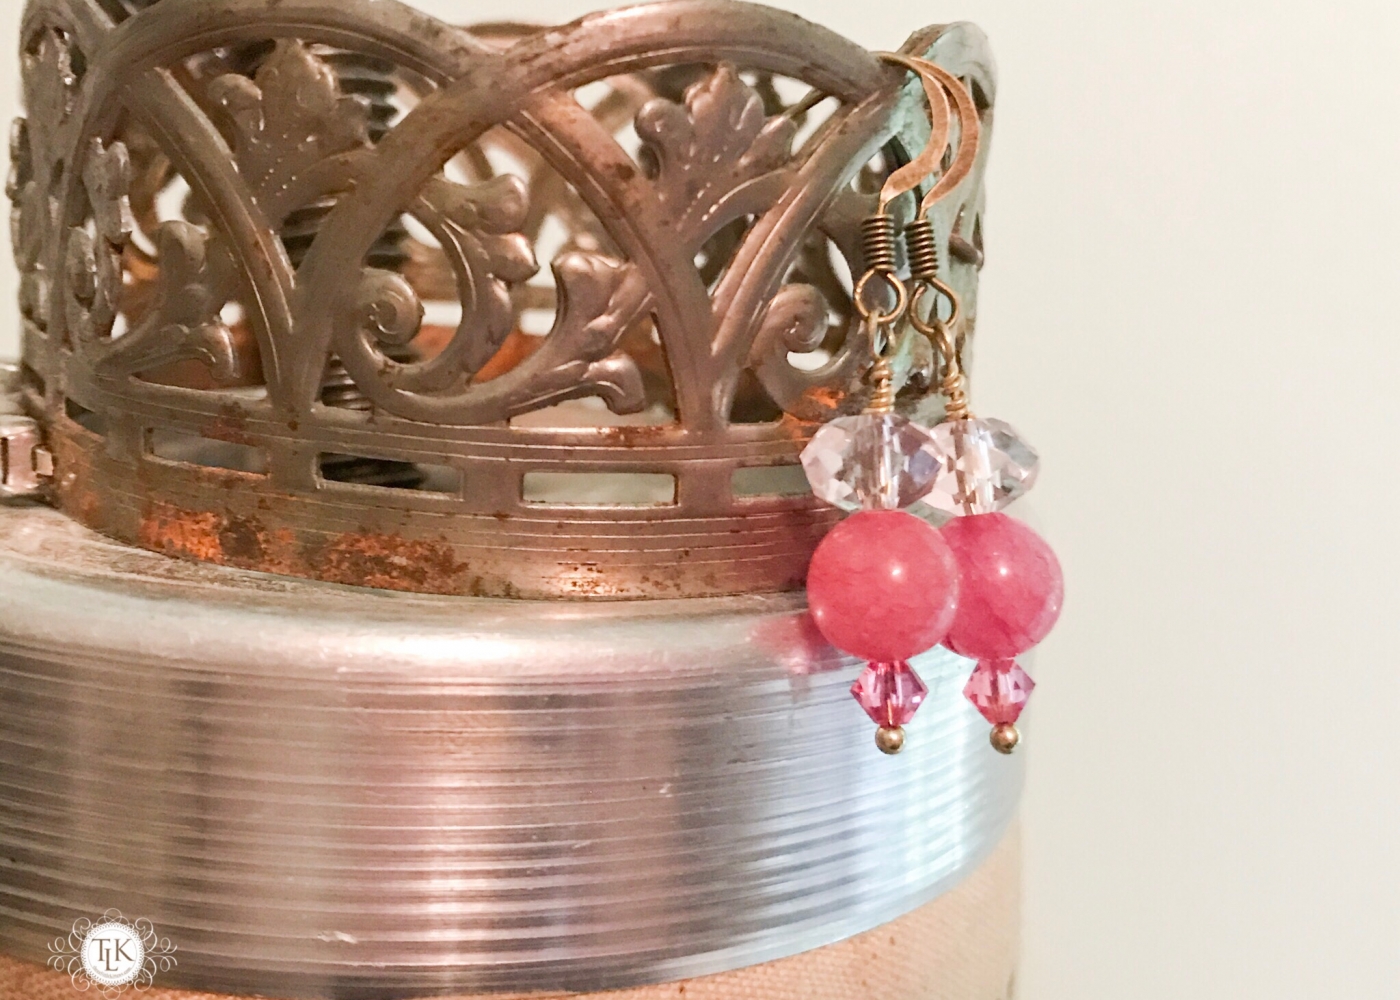 THREE LITTLE KITTENS | 3727 Pretty in Pink Pierced Earrings